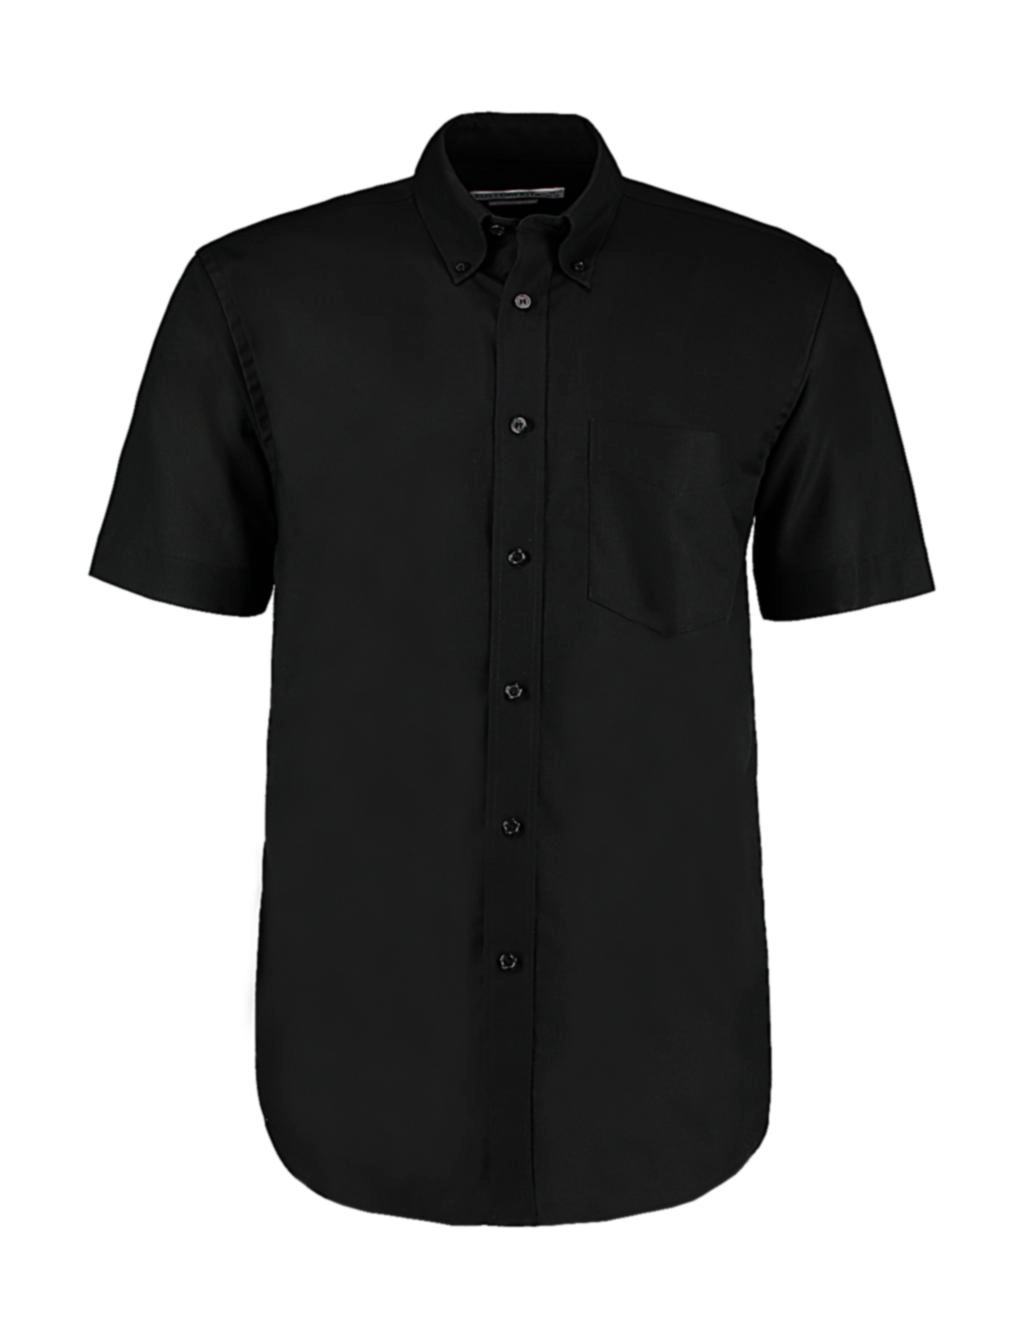 Classic Fit Workwear Oxford Shirt SSL zum Besticken und Bedrucken in der Farbe Black mit Ihren Logo, Schriftzug oder Motiv.